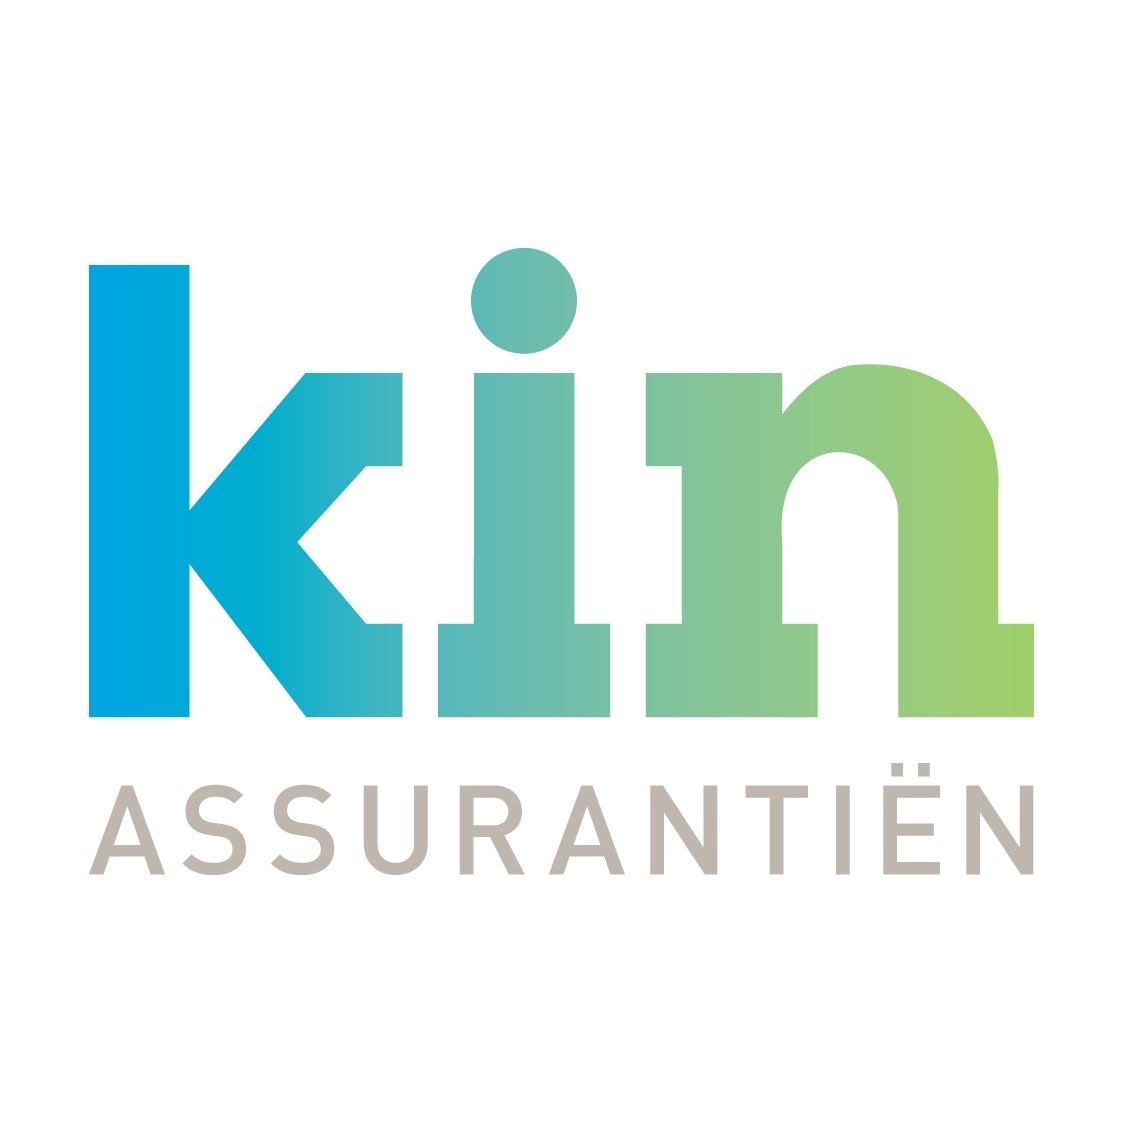 Kin Assurantien & Hypotheken B.V.